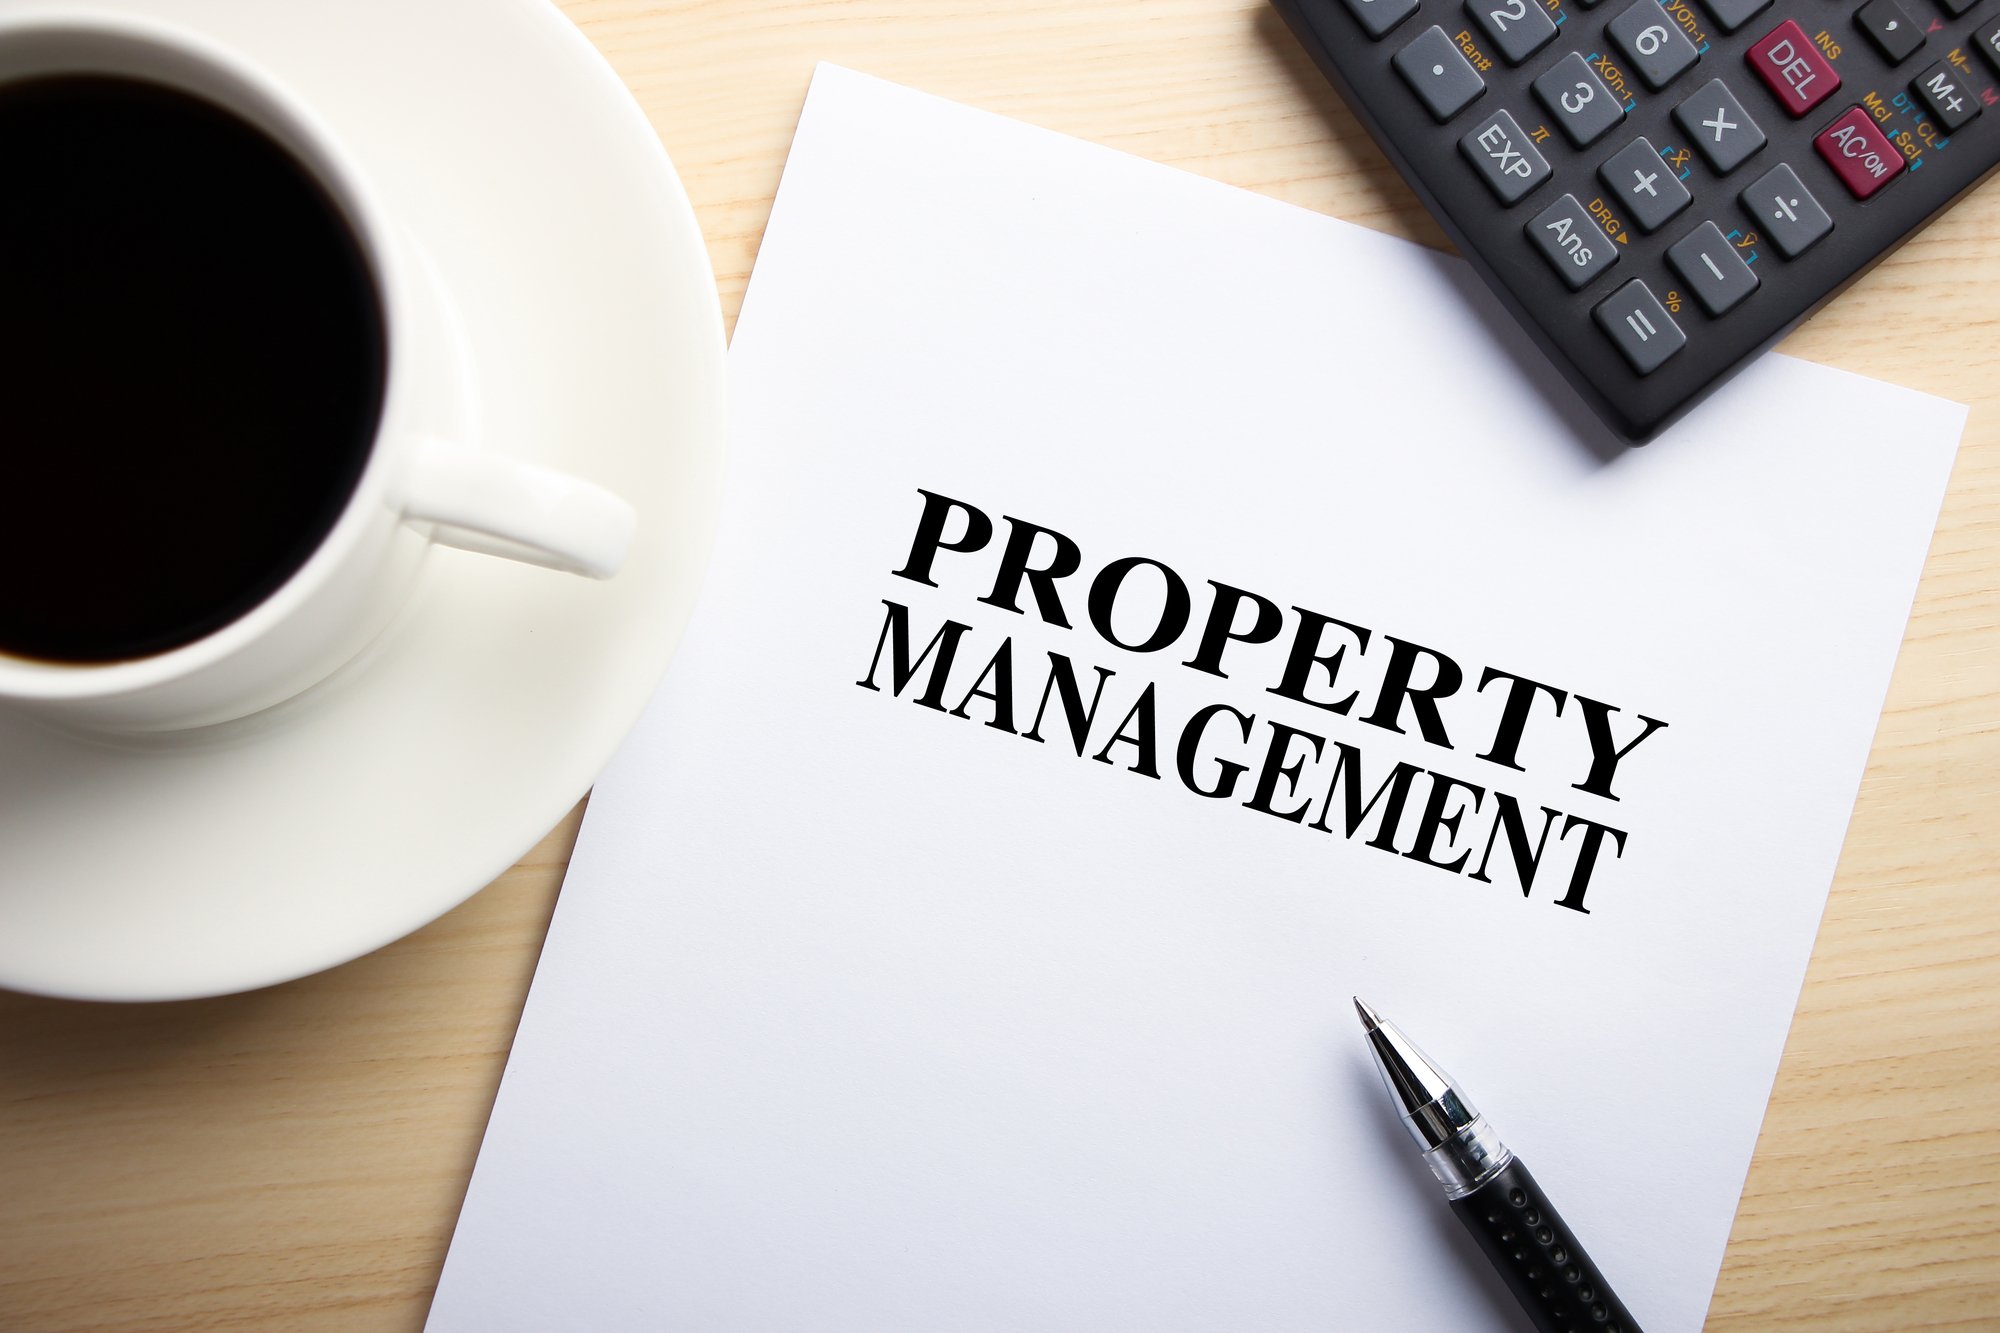 task based property management